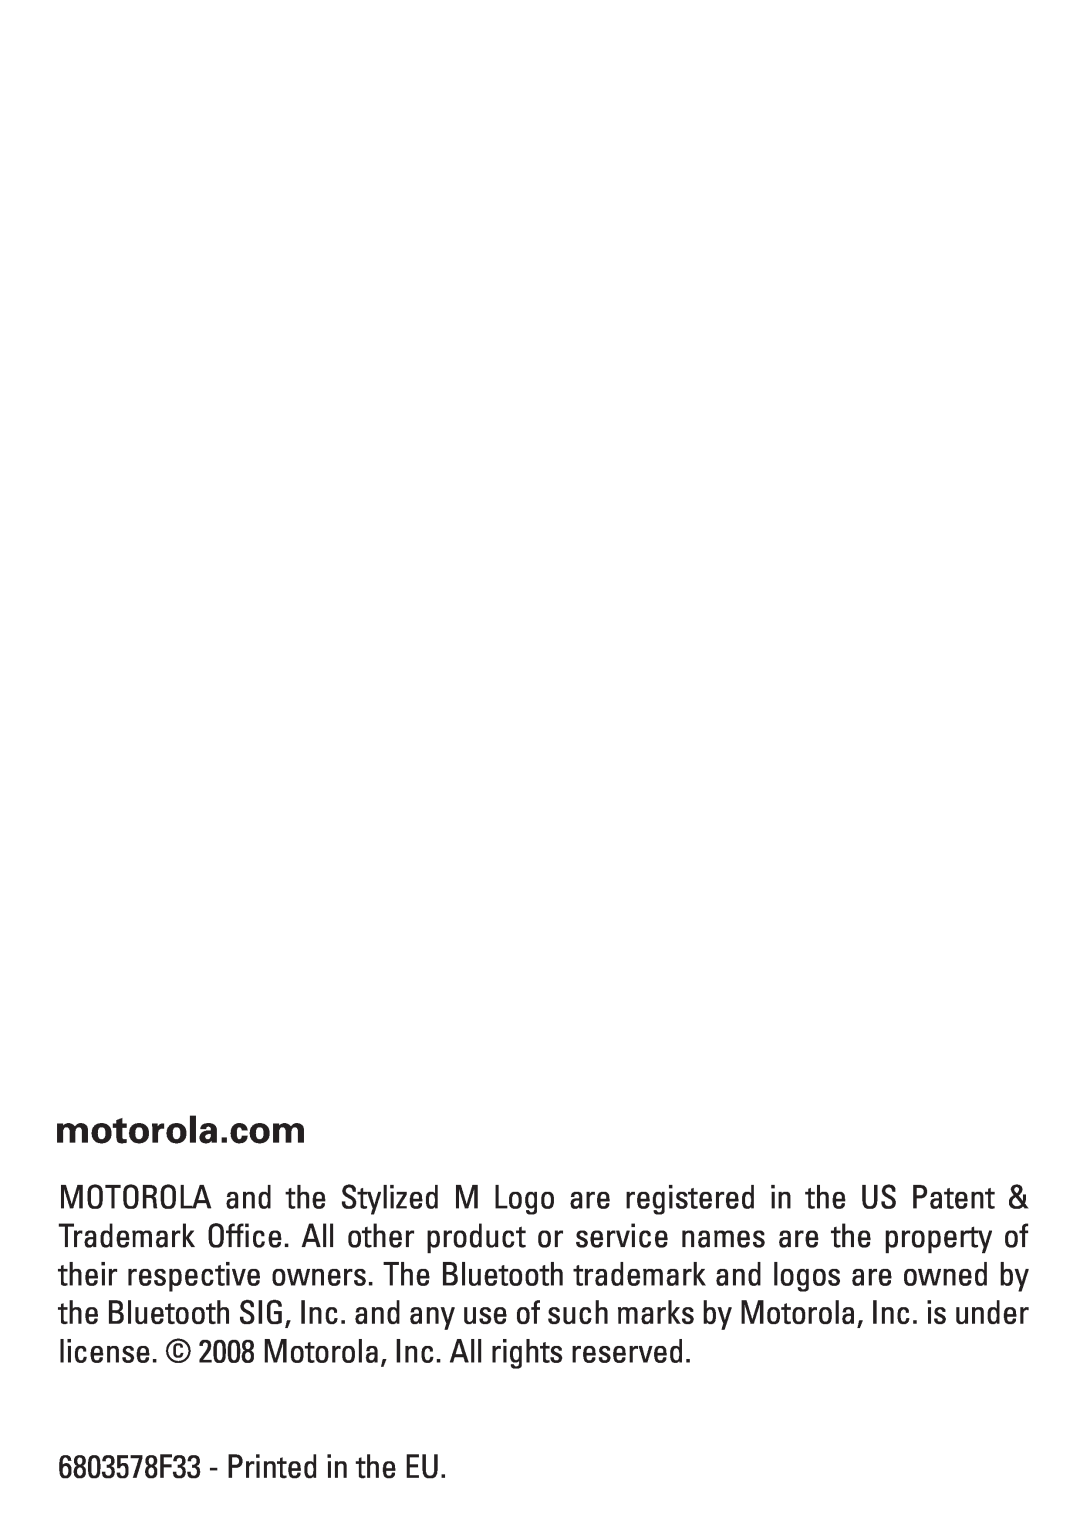 Motorola manual motorola.com, 6803578F33 - Printed in the EU 